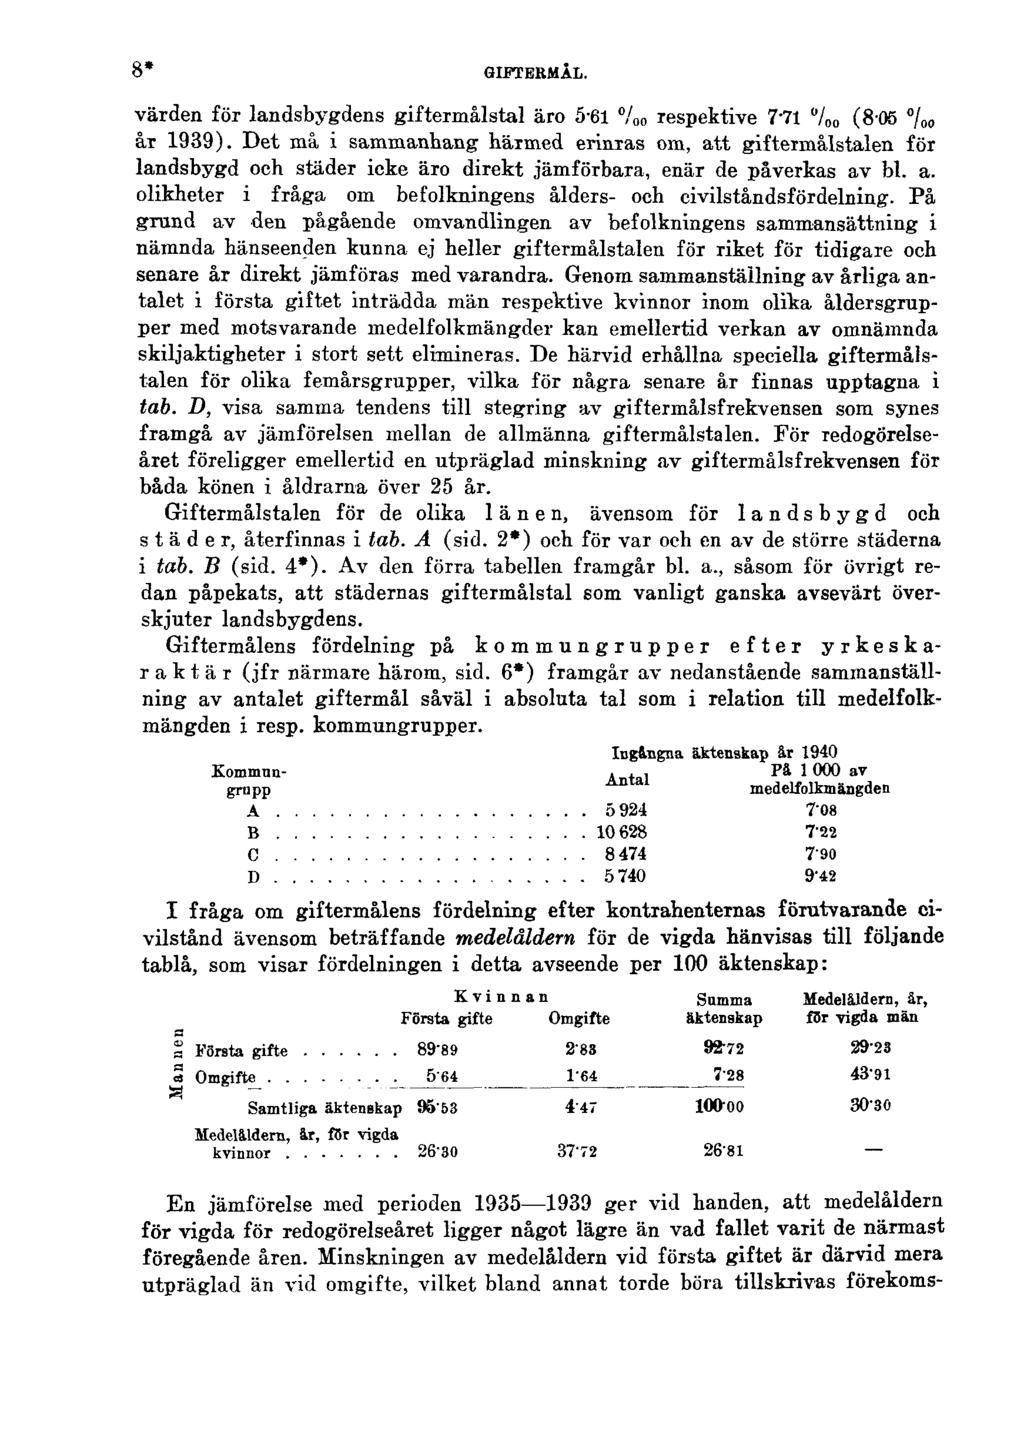 8* GIFTERMÅL. värden för landsbygdens giftermålstal äro 5-61 lespektive 771 (805 år 1939).